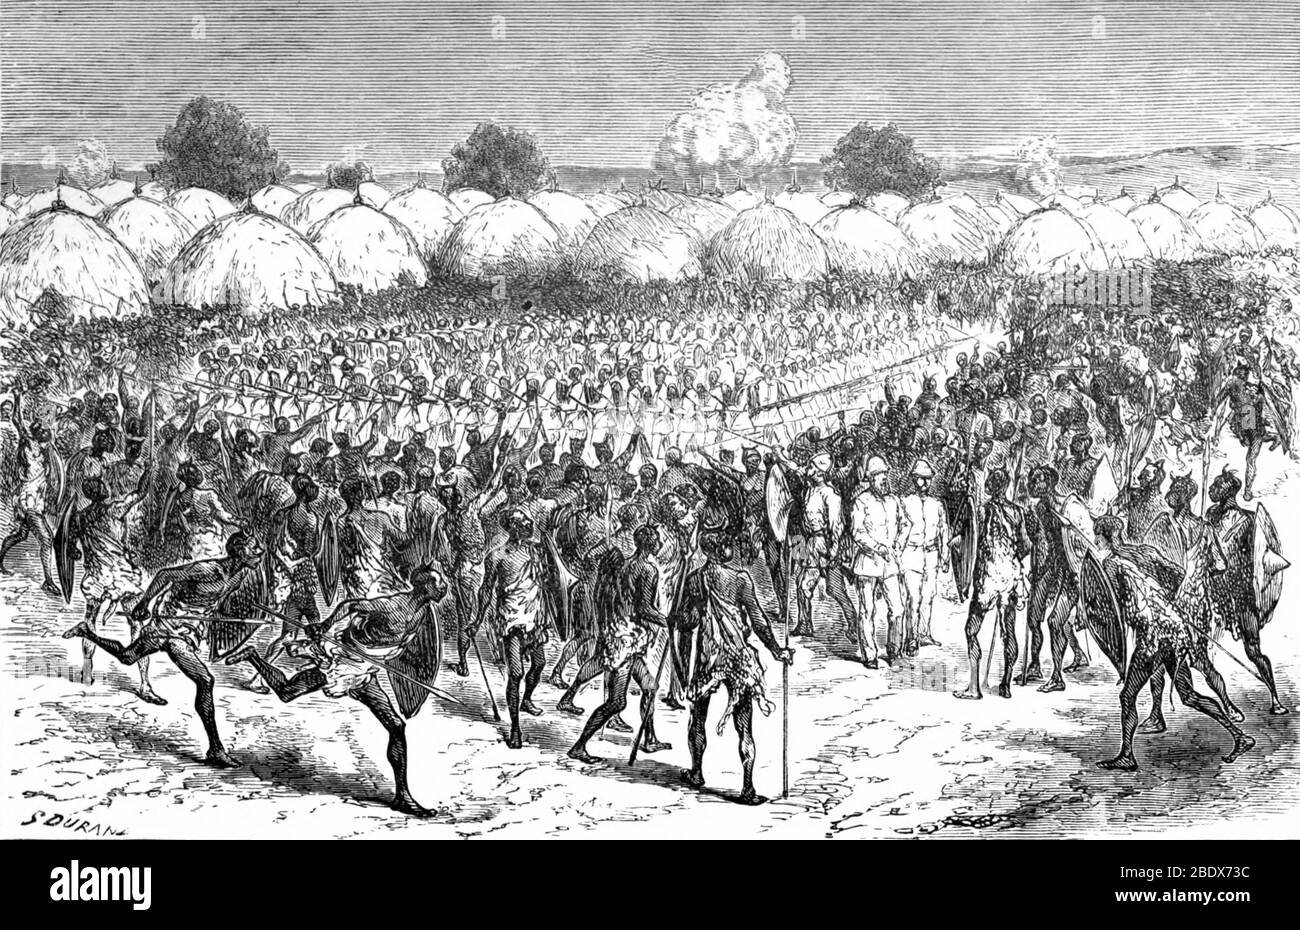 Bunyoro Warriors Surround Samuel Baker Military Expedition, 19th Century Stock Photo